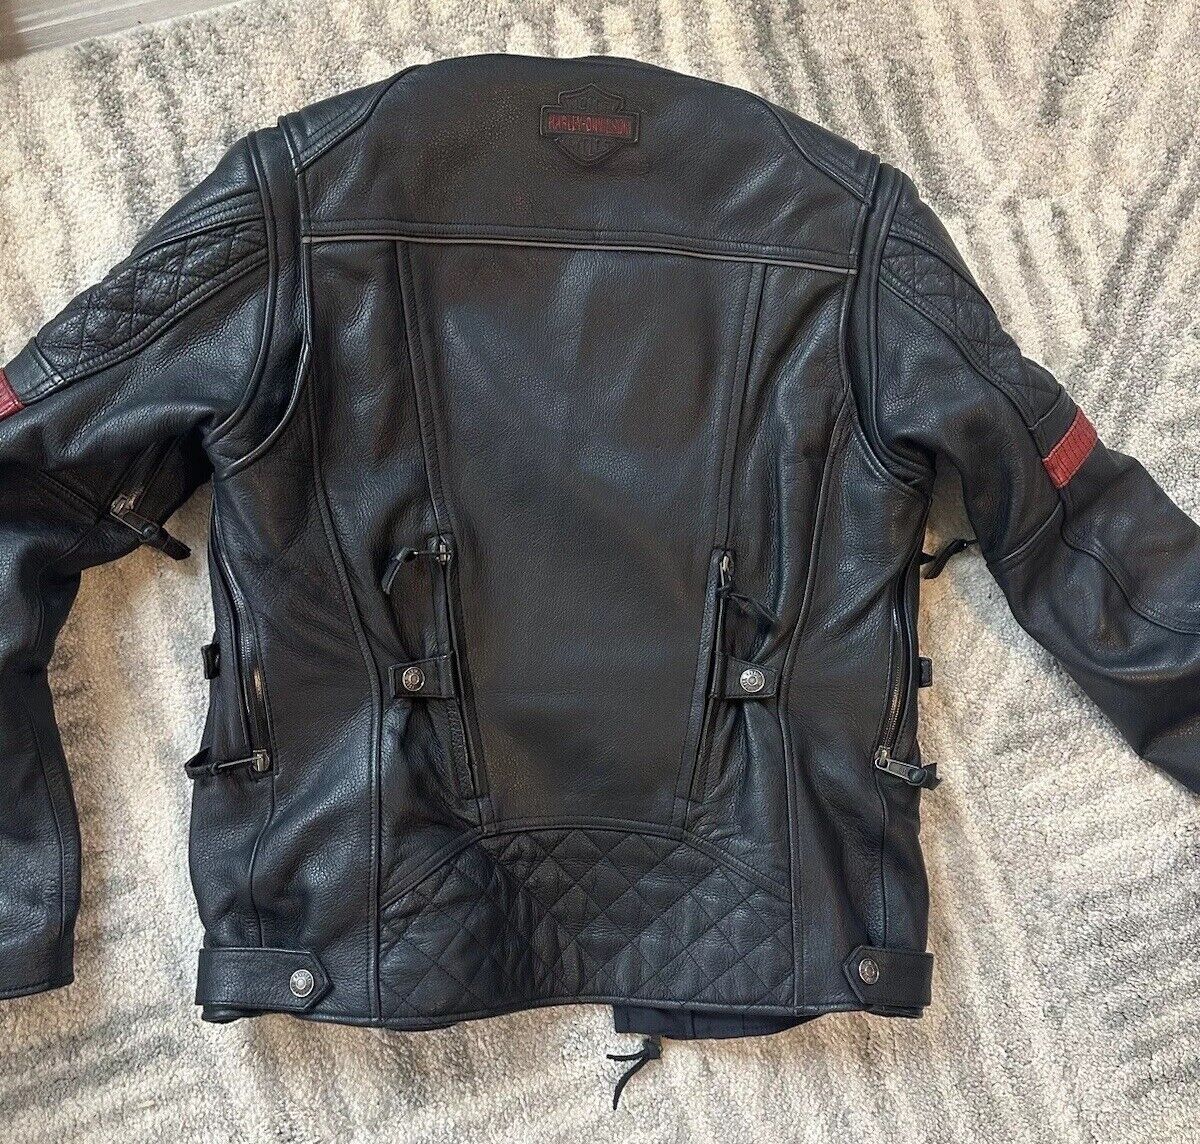 Harley Davison official leather jacket For Men